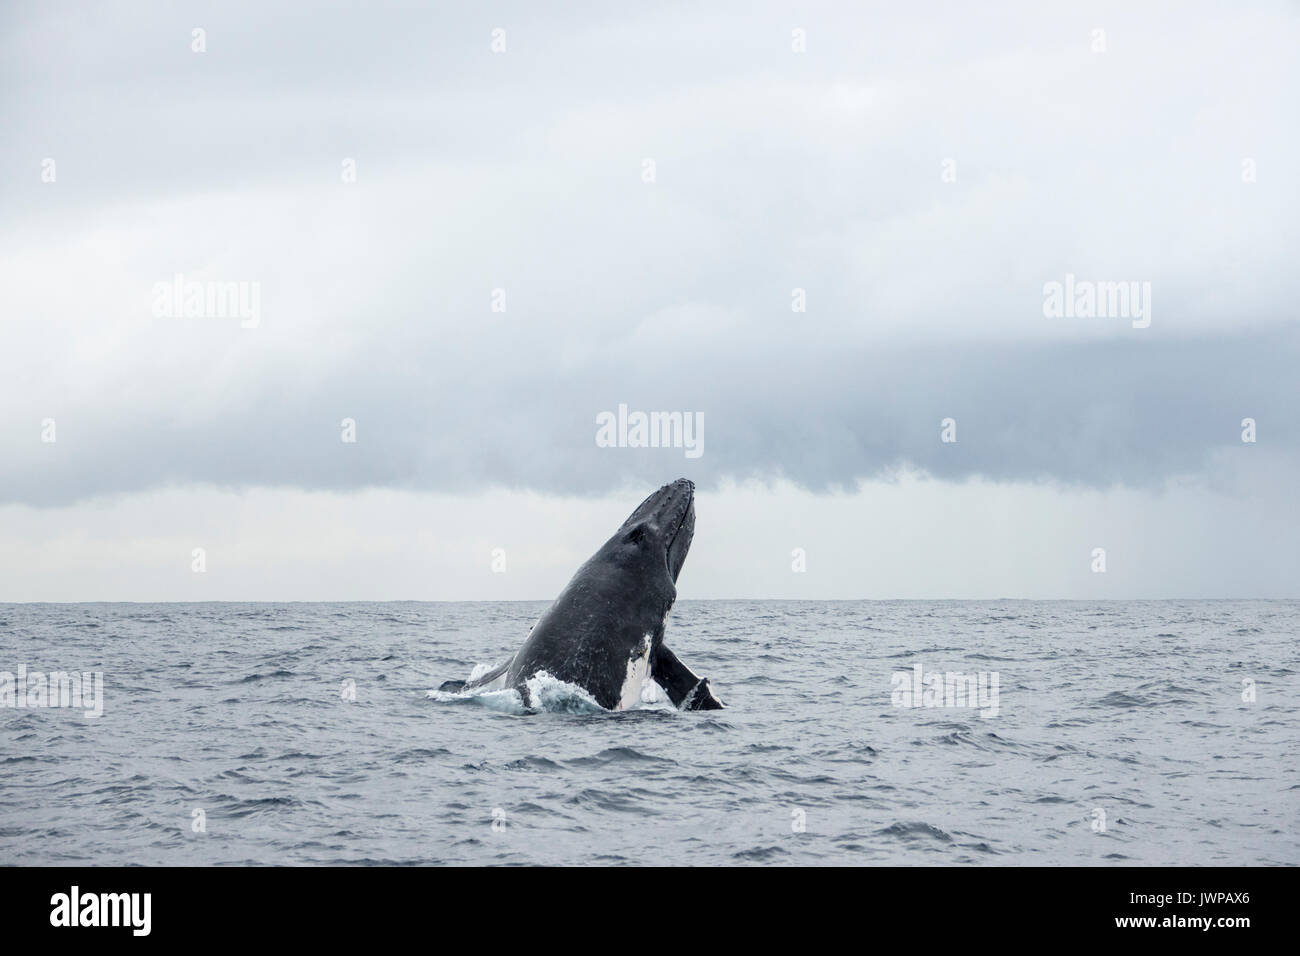 Violer baleine à bosse sur route de migration d'hiver au large de Sydney Heads Australie Banque D'Images